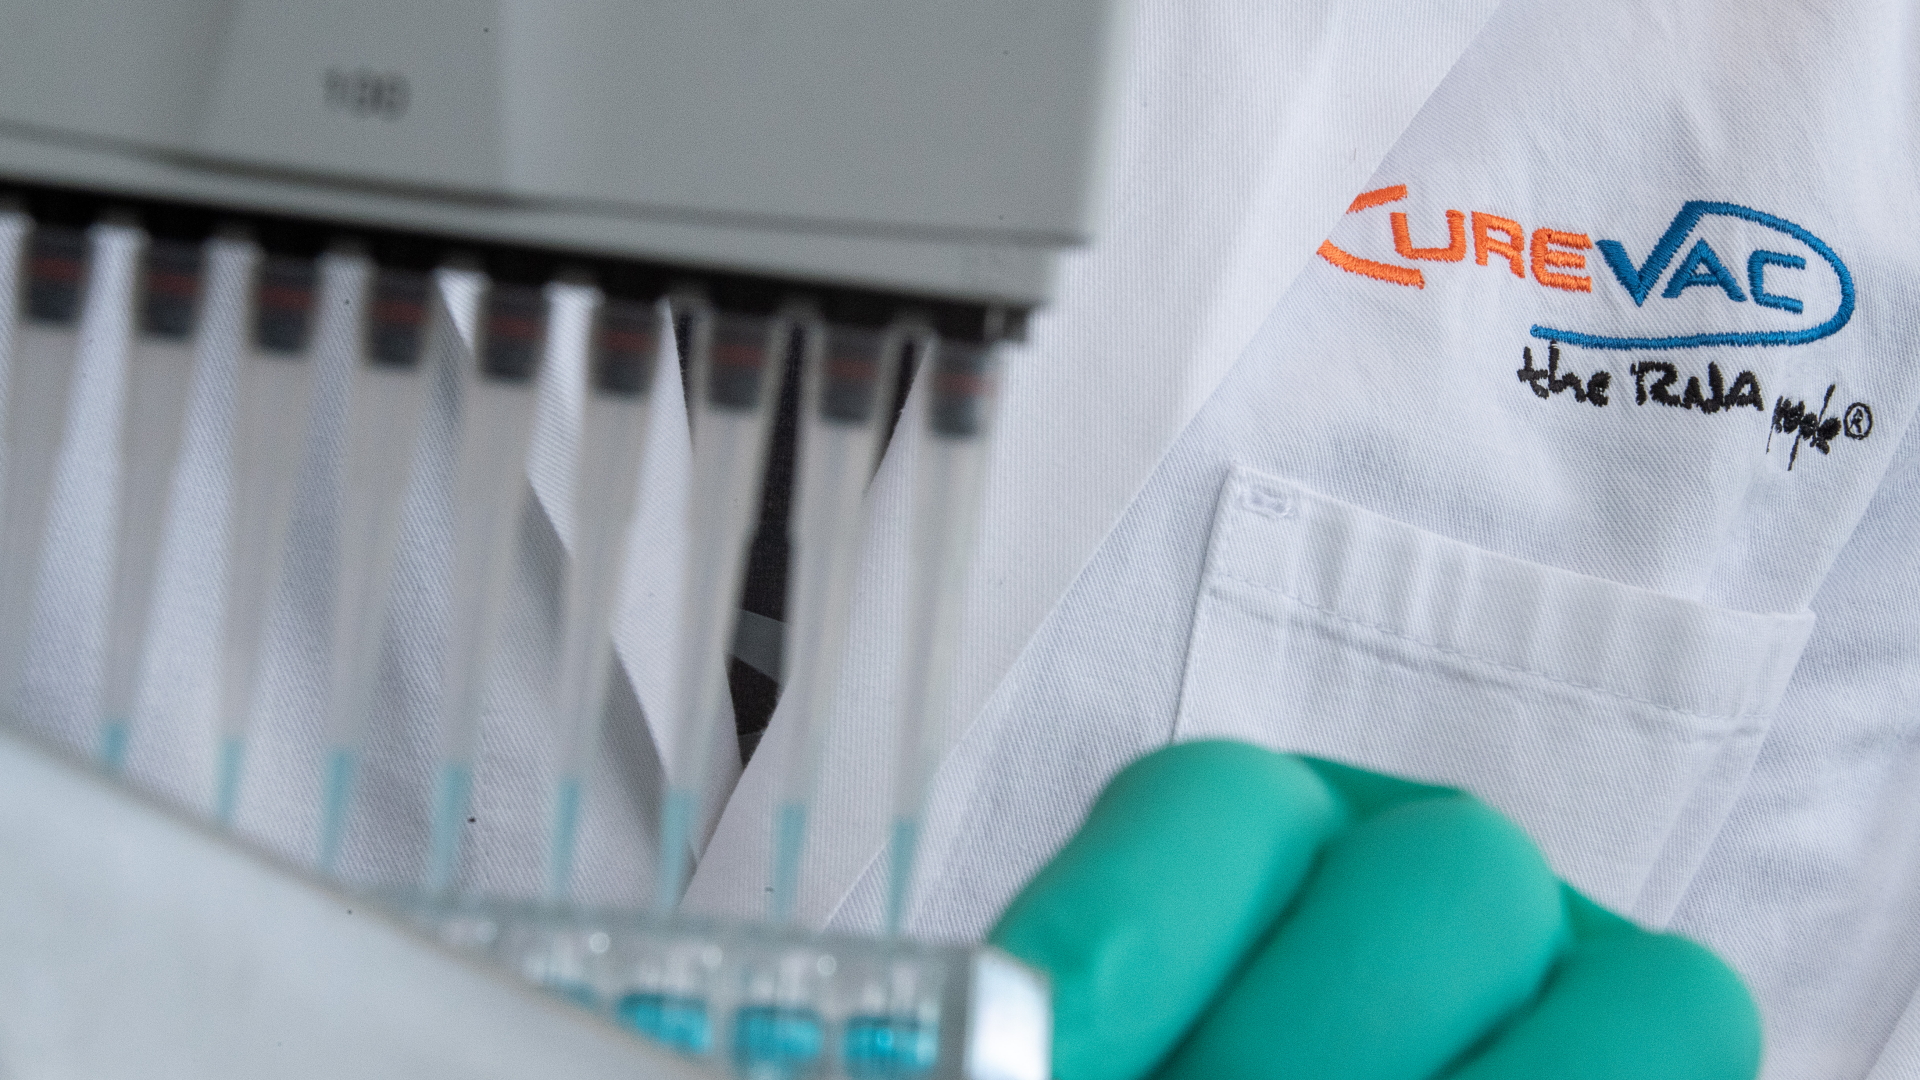 Ein Mann pipettiert in einem Labor des biopharmazeutischen Unternehmens Curevac eine blaue Flüssigkeit.